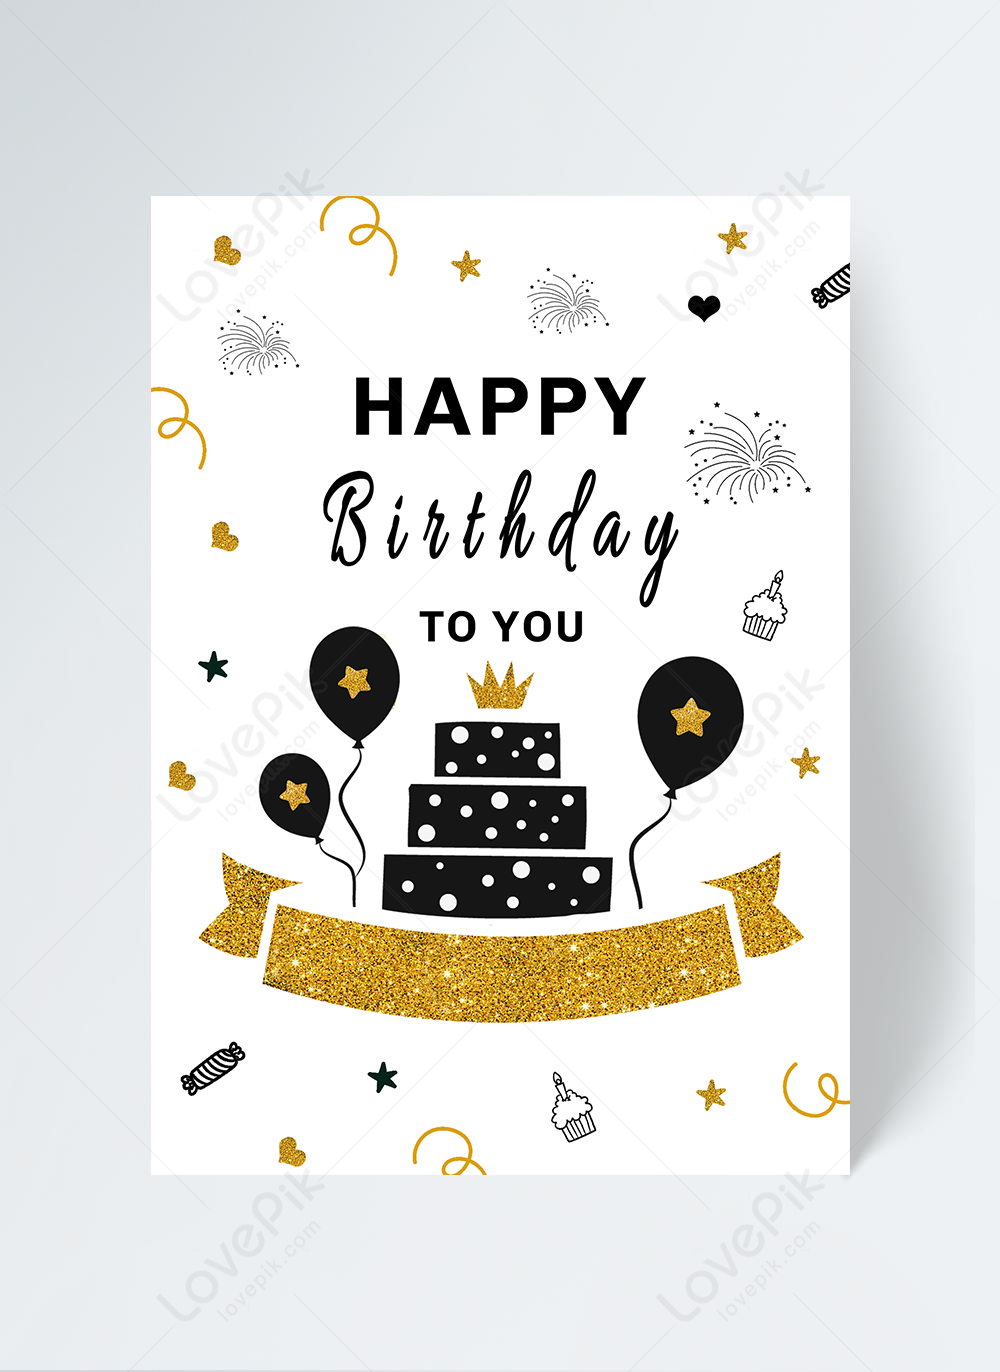 Stick Figure Birthday Invitation: Lời mời sinh nhật với những nhân vật cây nhỏ xinh xắn làm từ giấy sẽ là một điều tuyệt vời để gửi đến những người bạn của bạn. Hãy cùng xem hình ảnh để lựa chọn cho mình lời mời sinh nhật đáng yêu nhé.